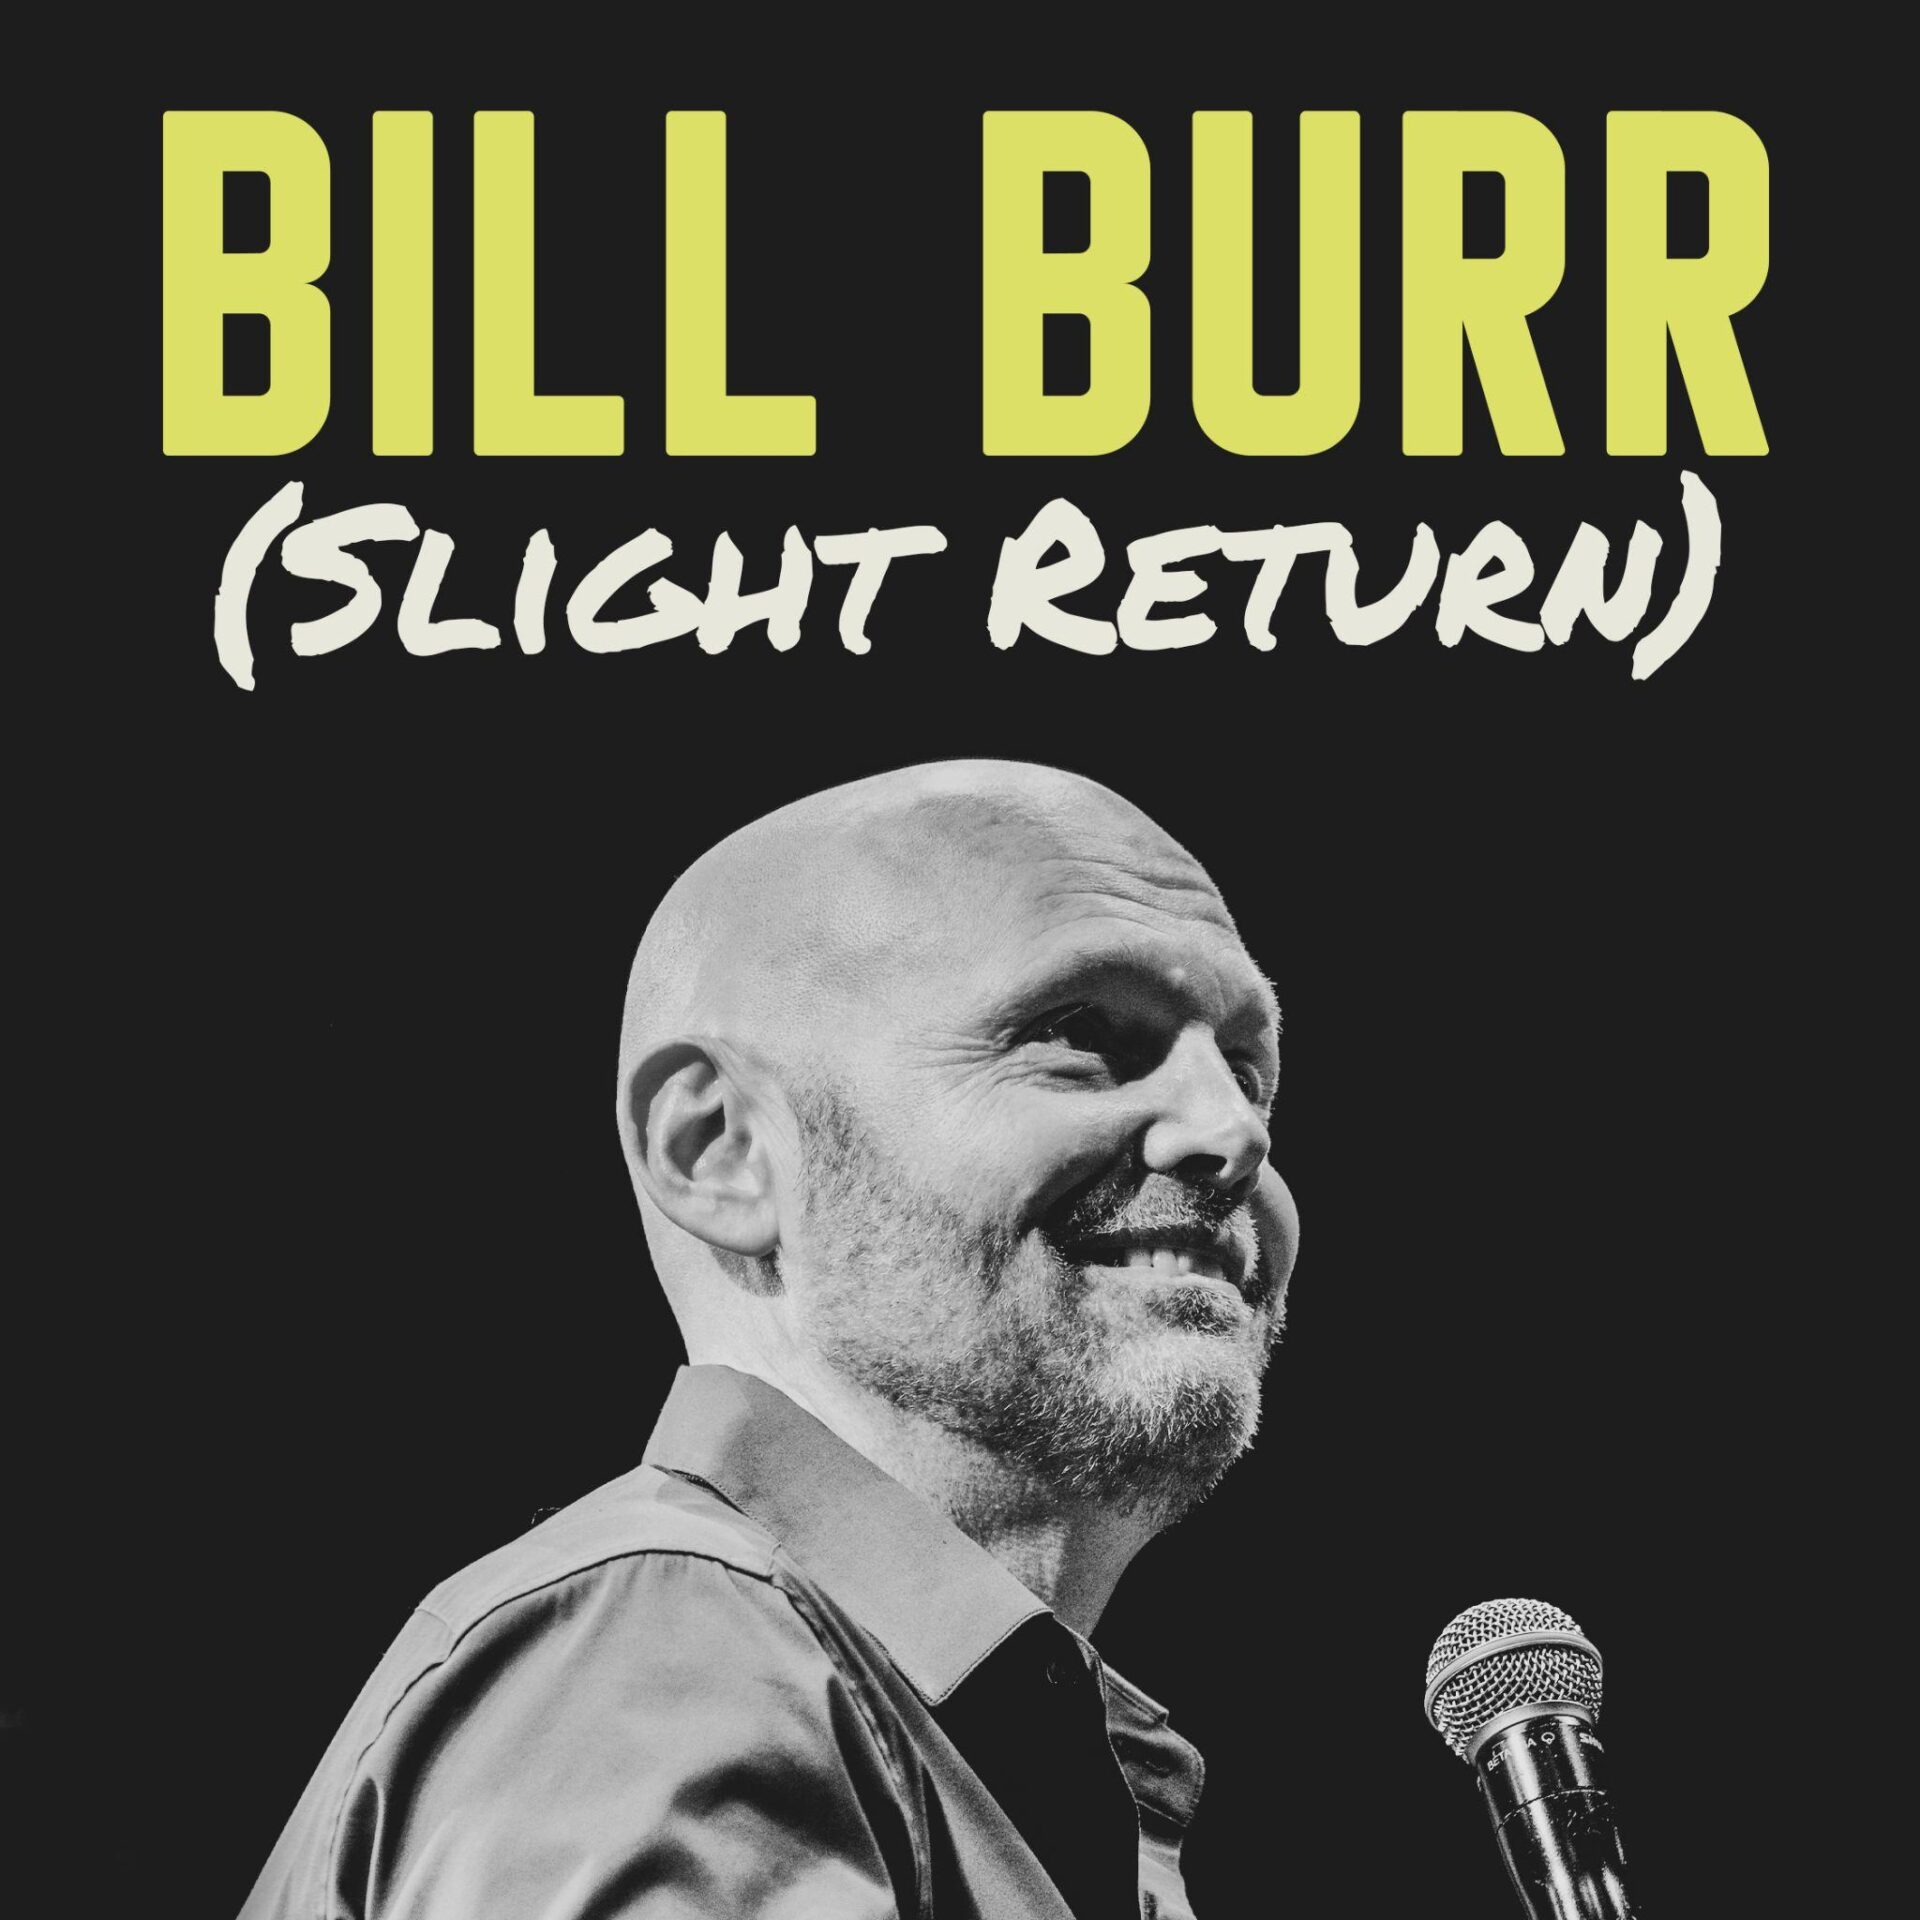 Bill Burr Announces (Slight Return) Tour at Capital One Arena September